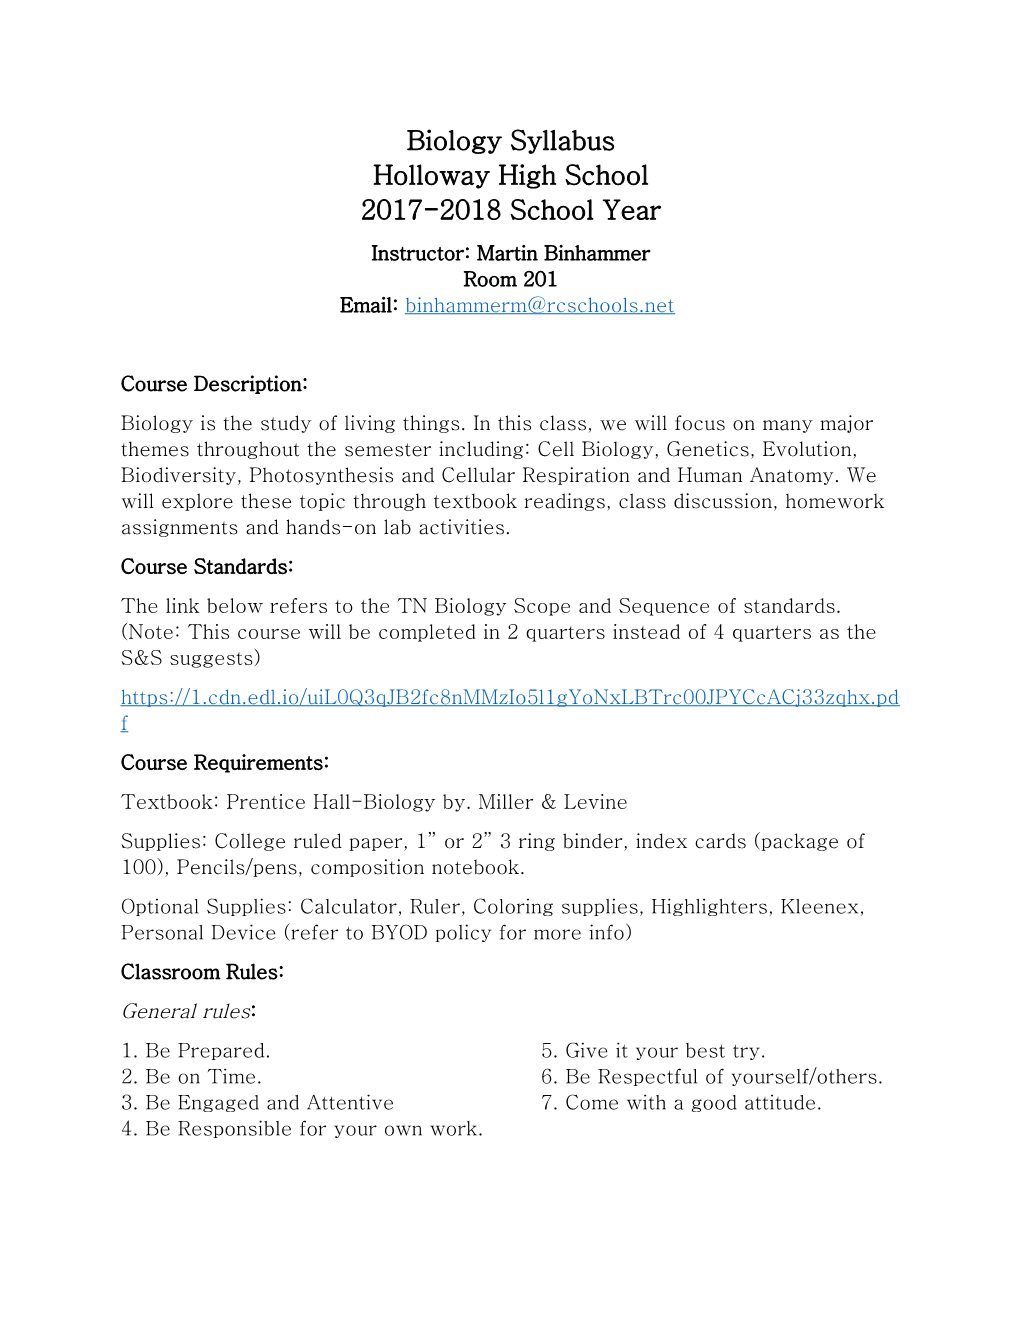 Biology Syllabus Holloway High School 2017-2018 School Year